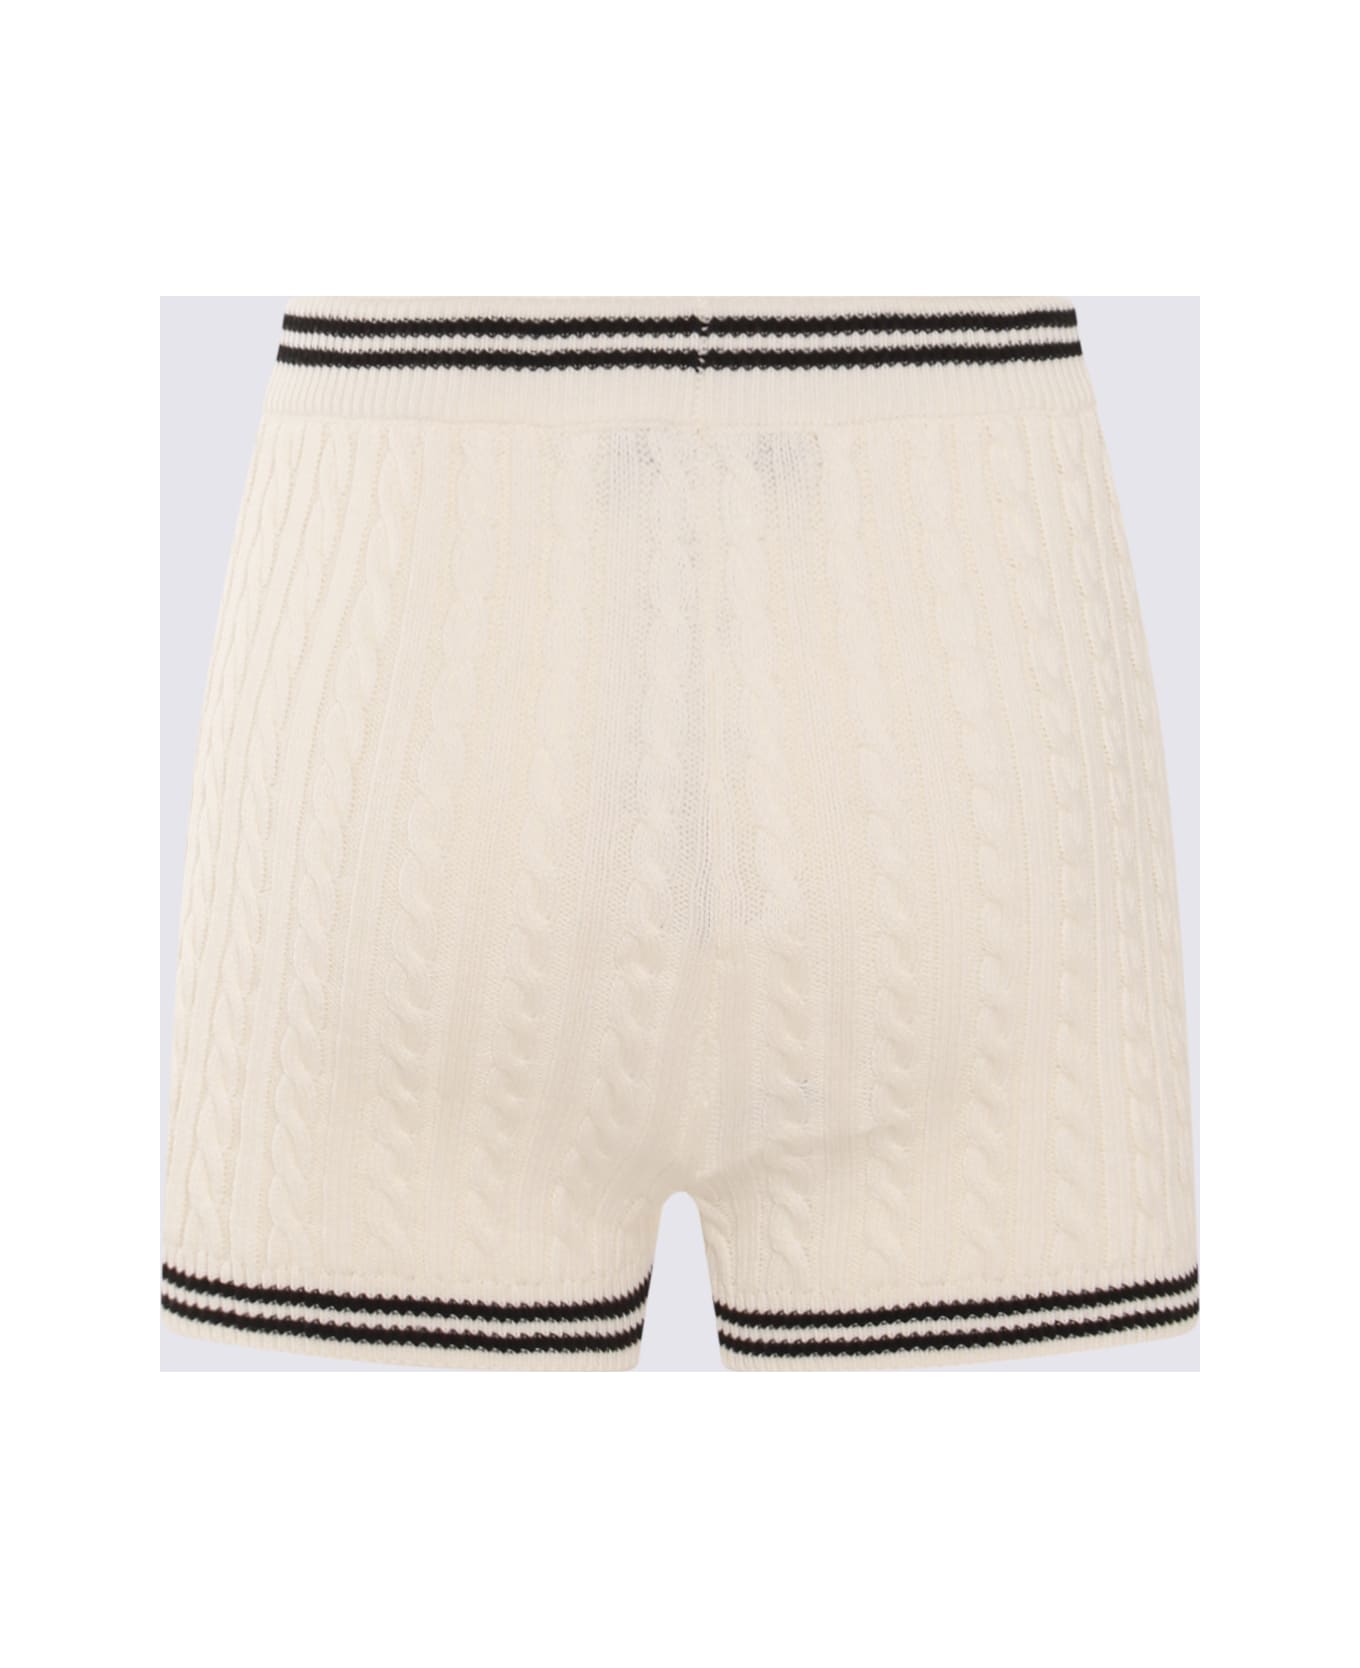 Alessandra Rich White Cotton Shorts - White